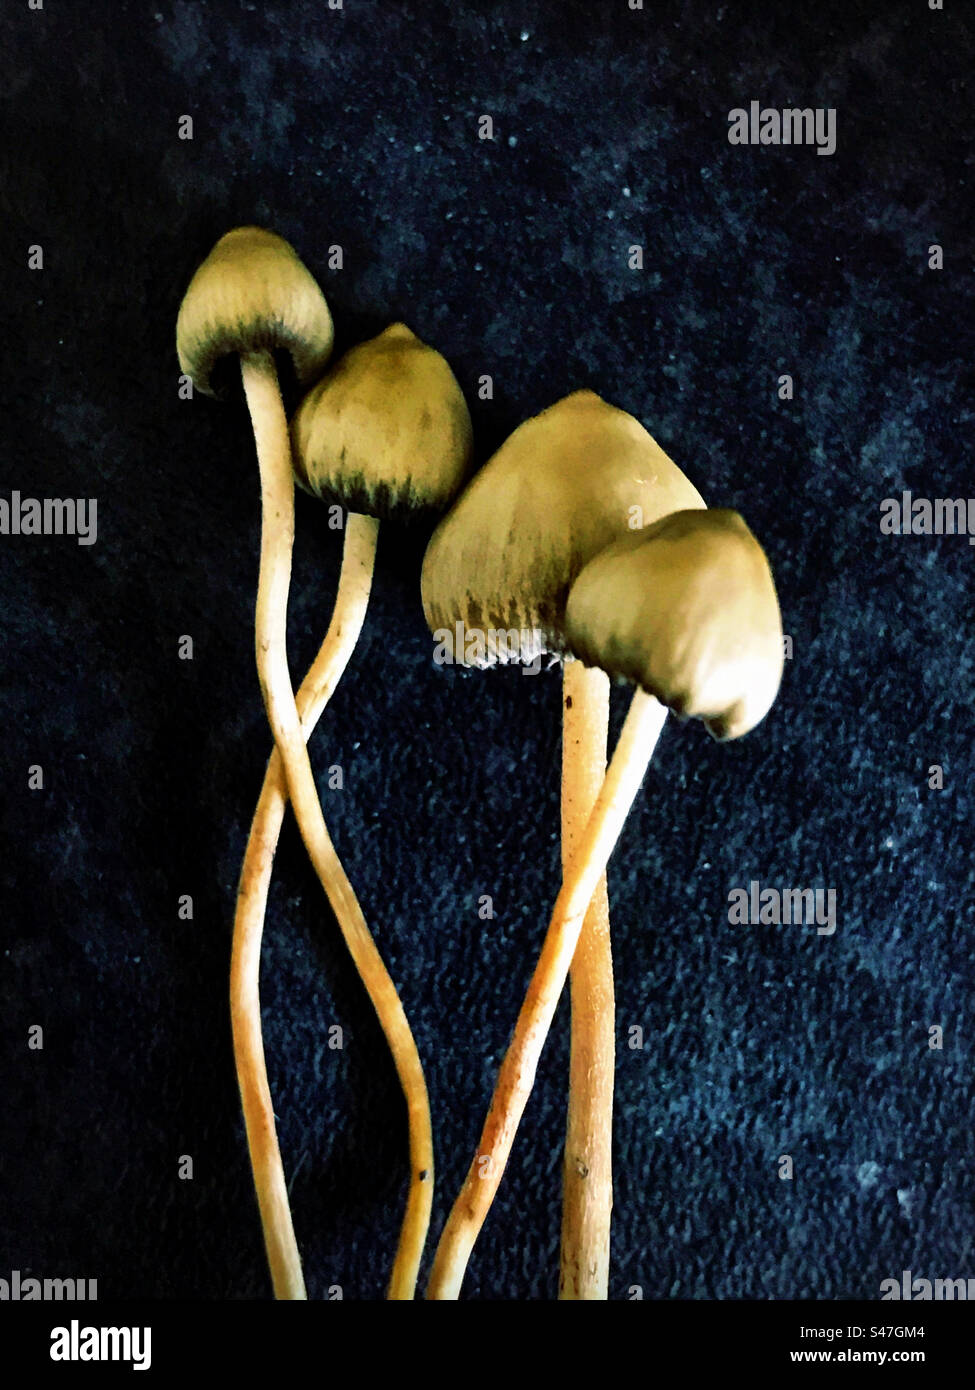 Psilocybe semilanceata, magic mushrooms, Liberty Cap. Stock Photo